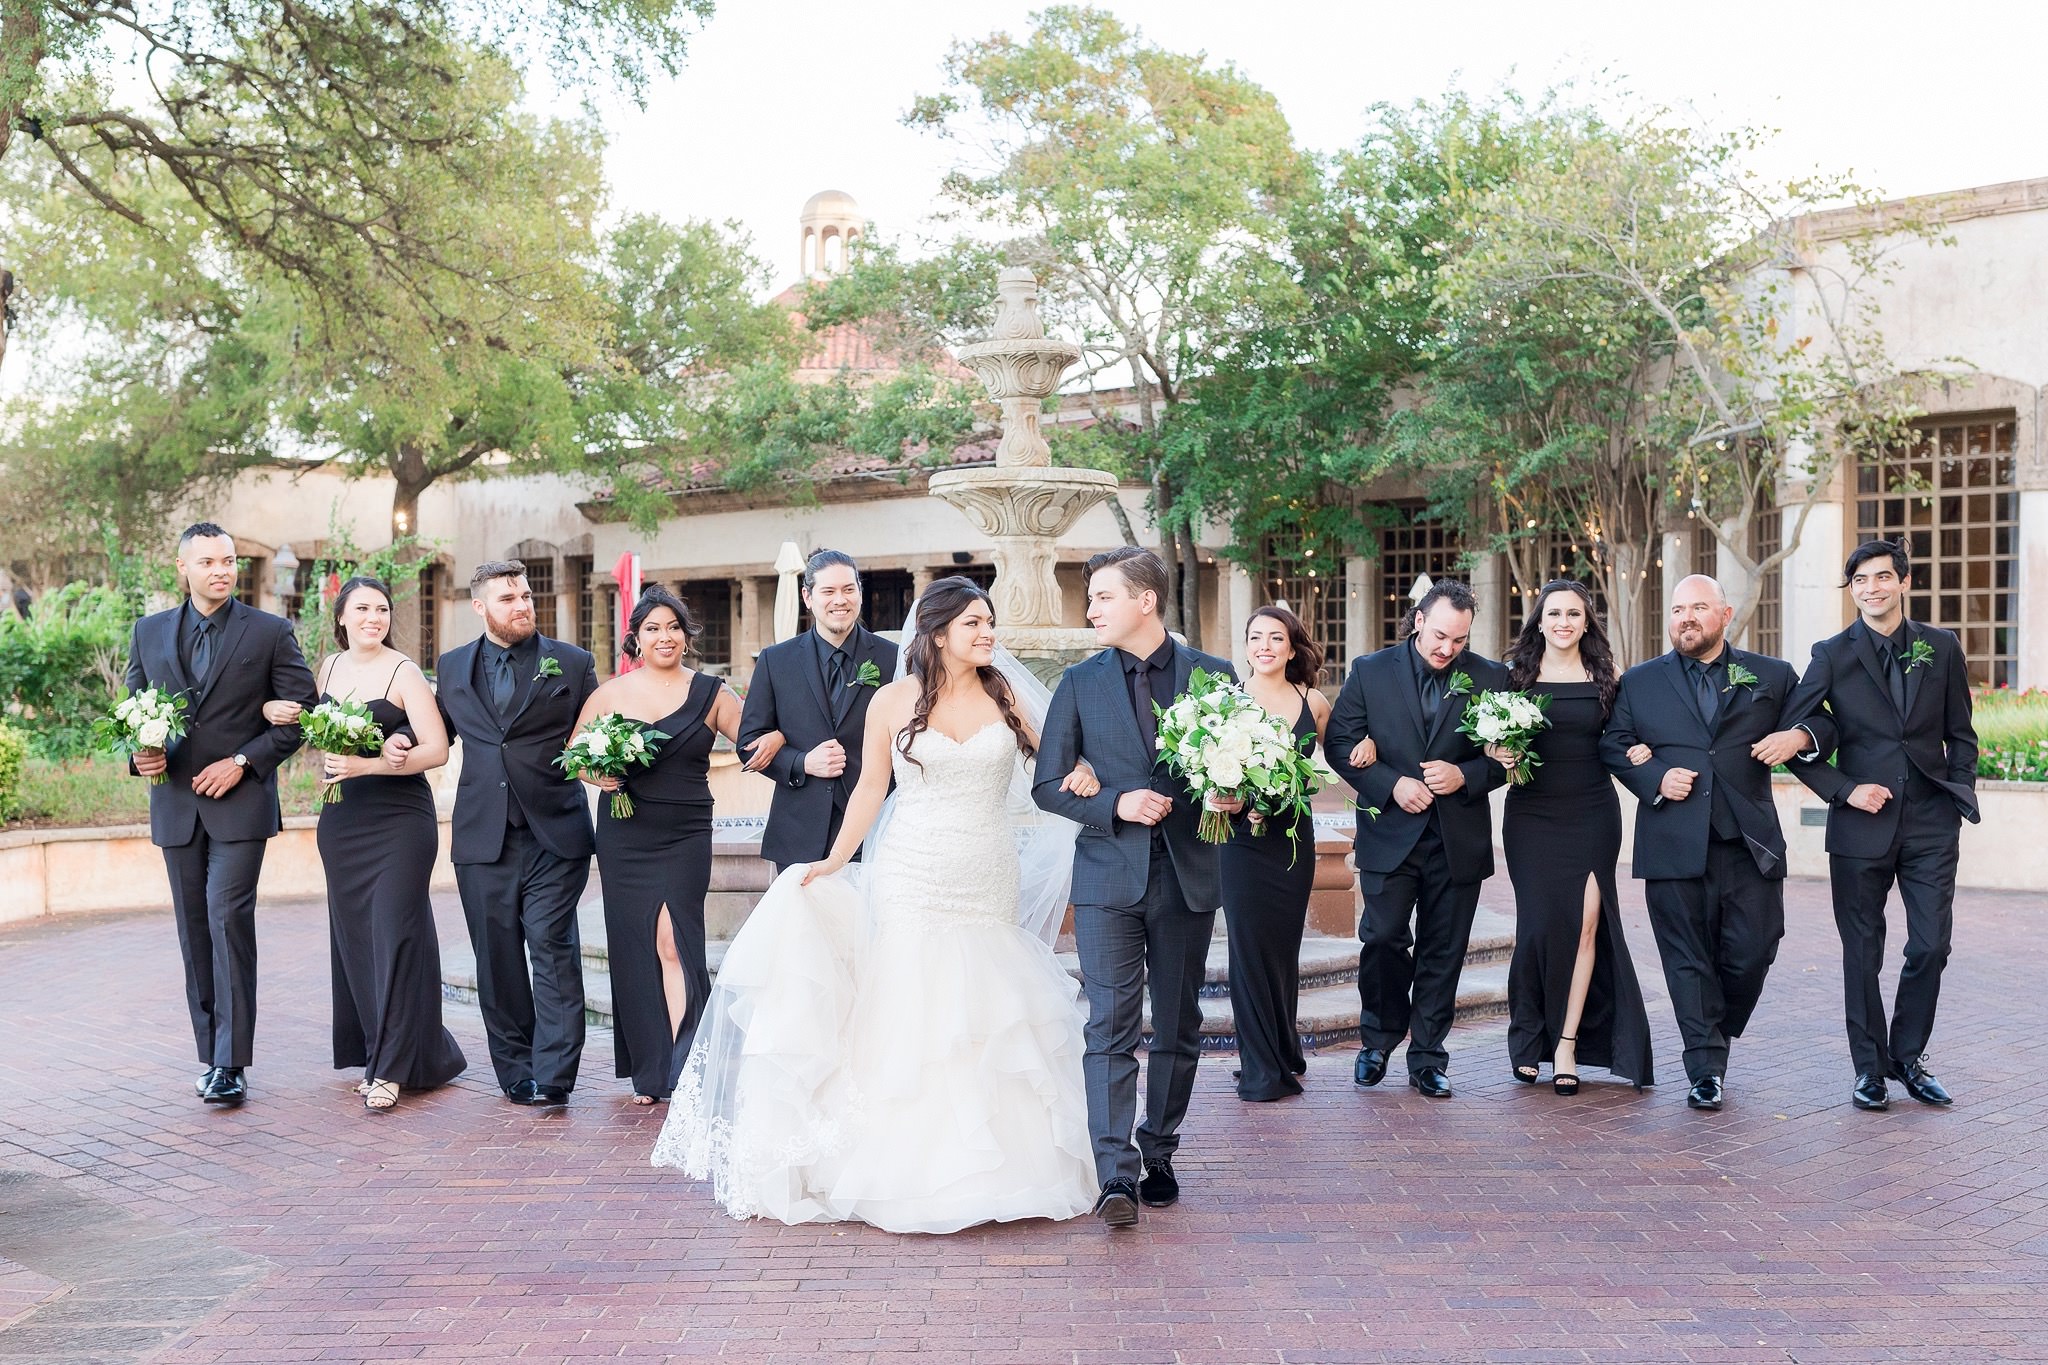 A Black & Gold Wedding at the Dominion Country Club by Dawn Elizabeth Studios, San Antonio Wedding Photographer